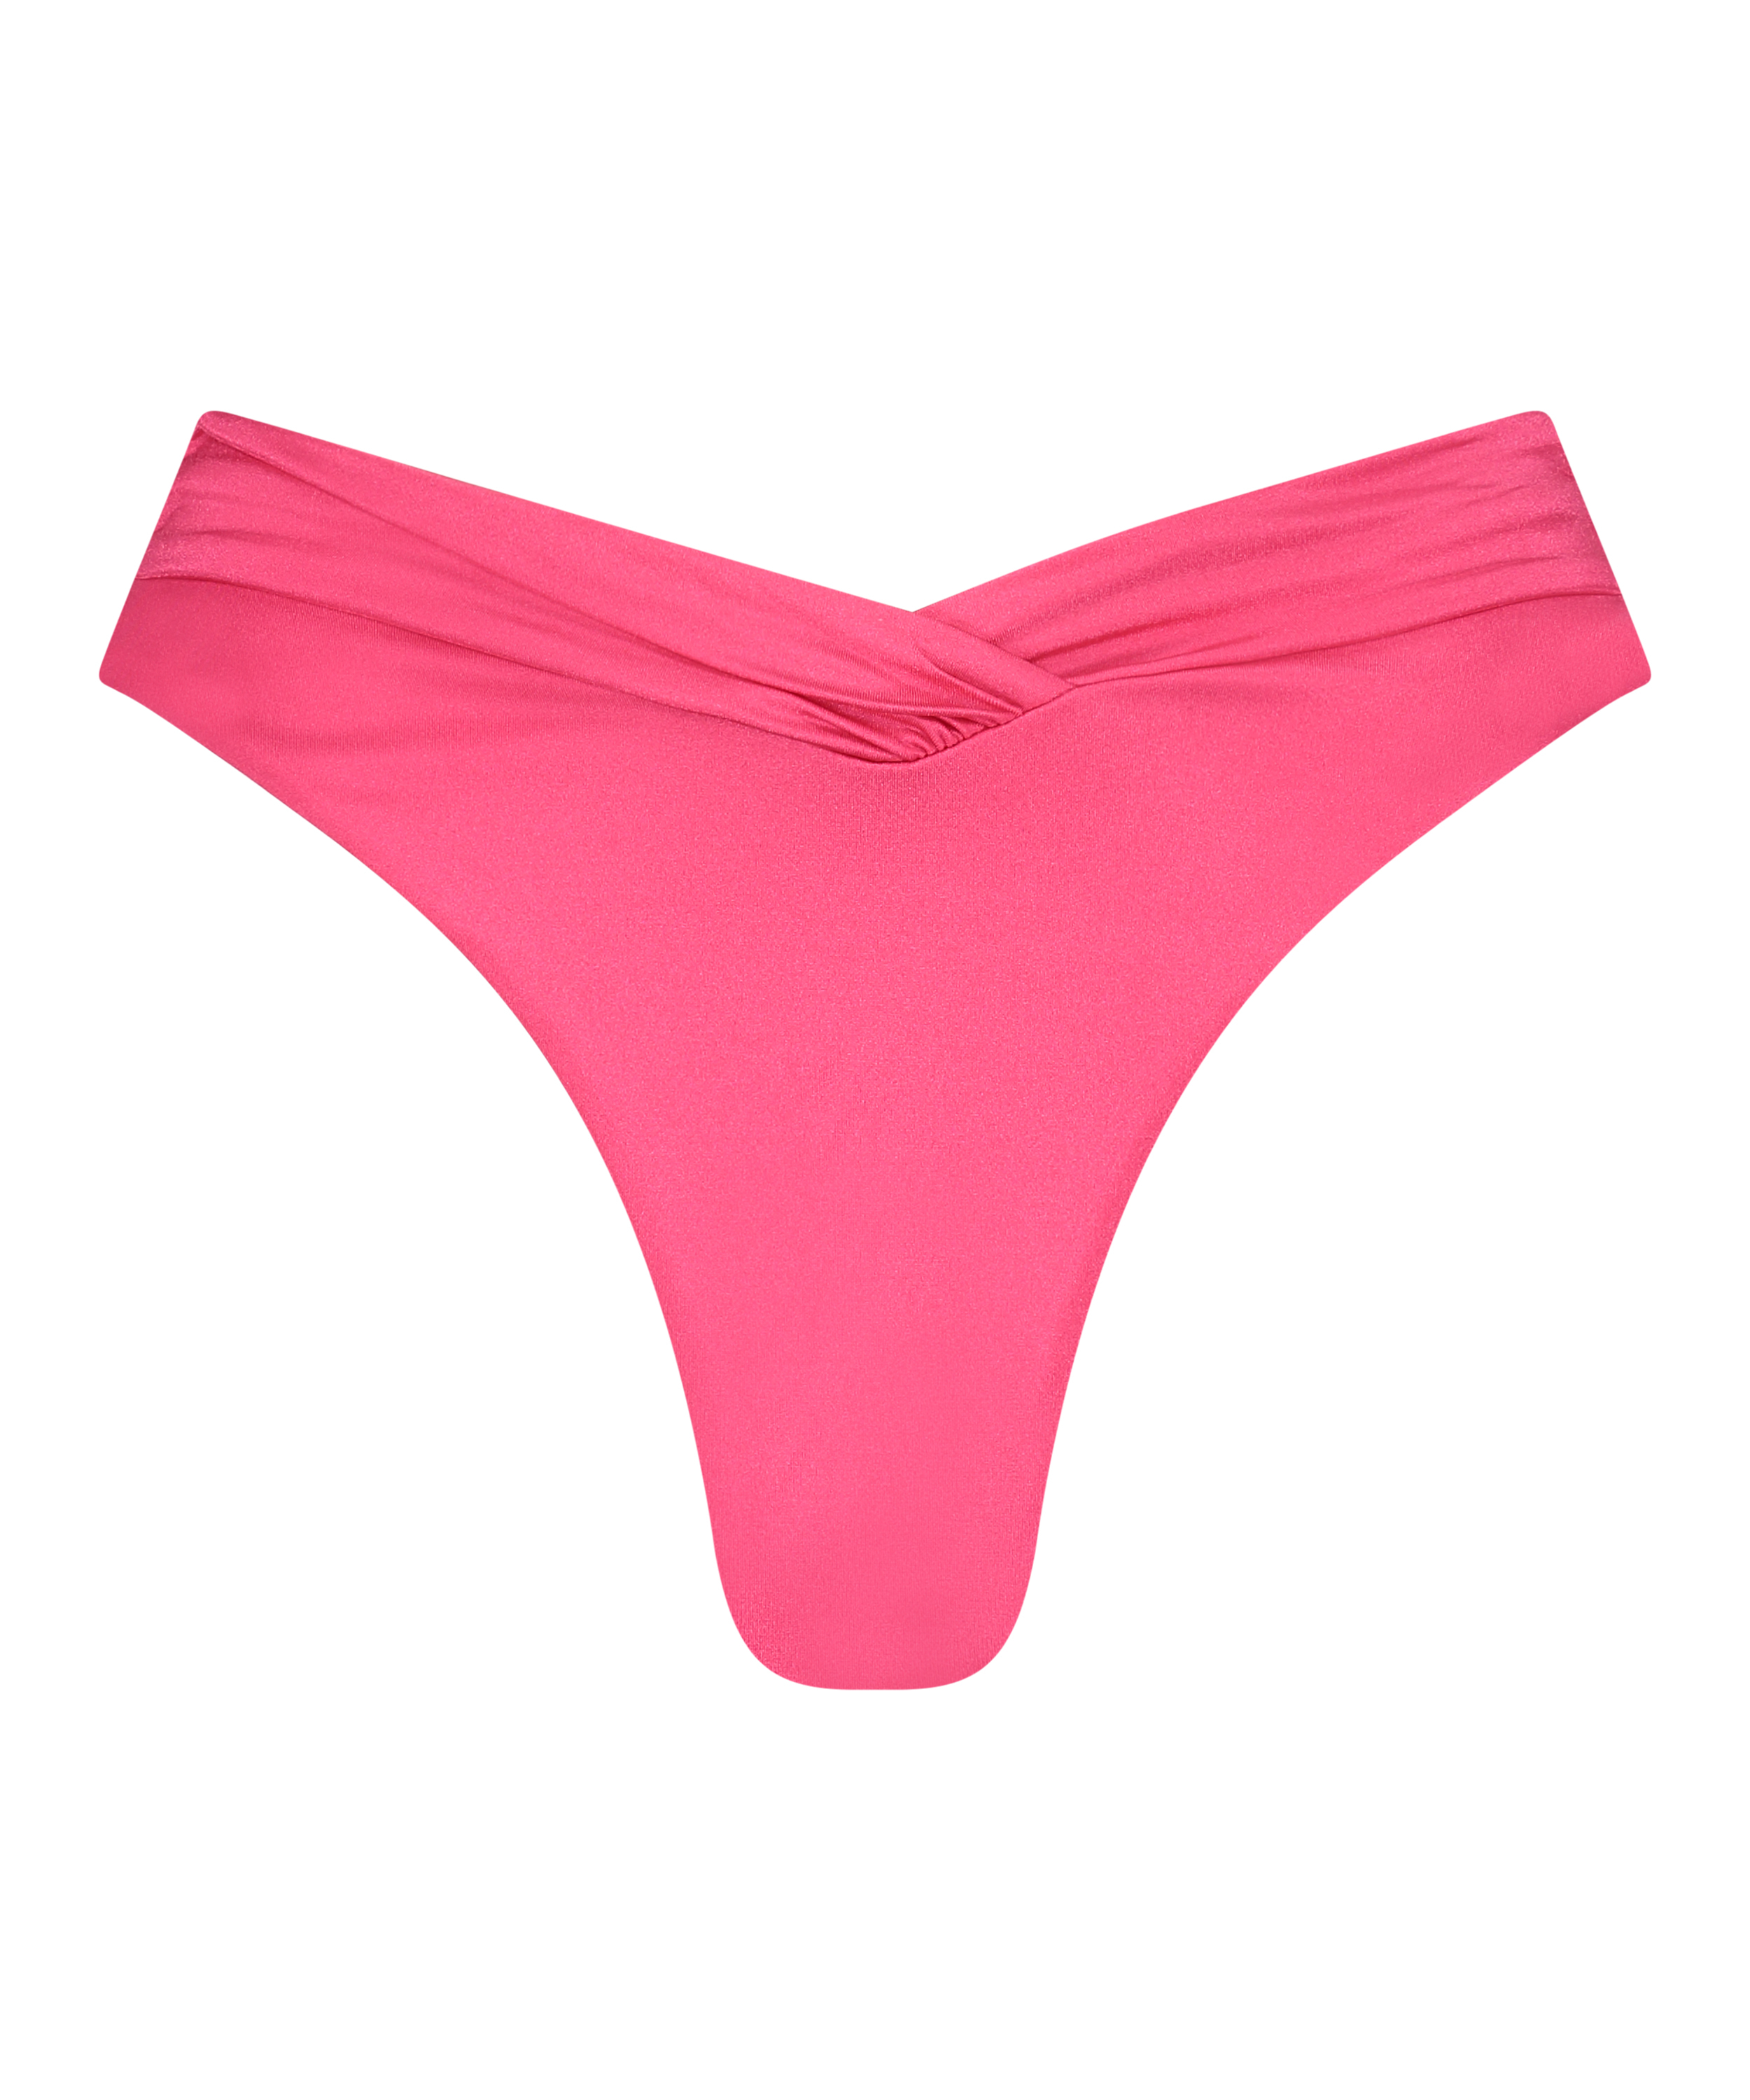 Grenada High Waisted Bikini Bottoms, Pink, main